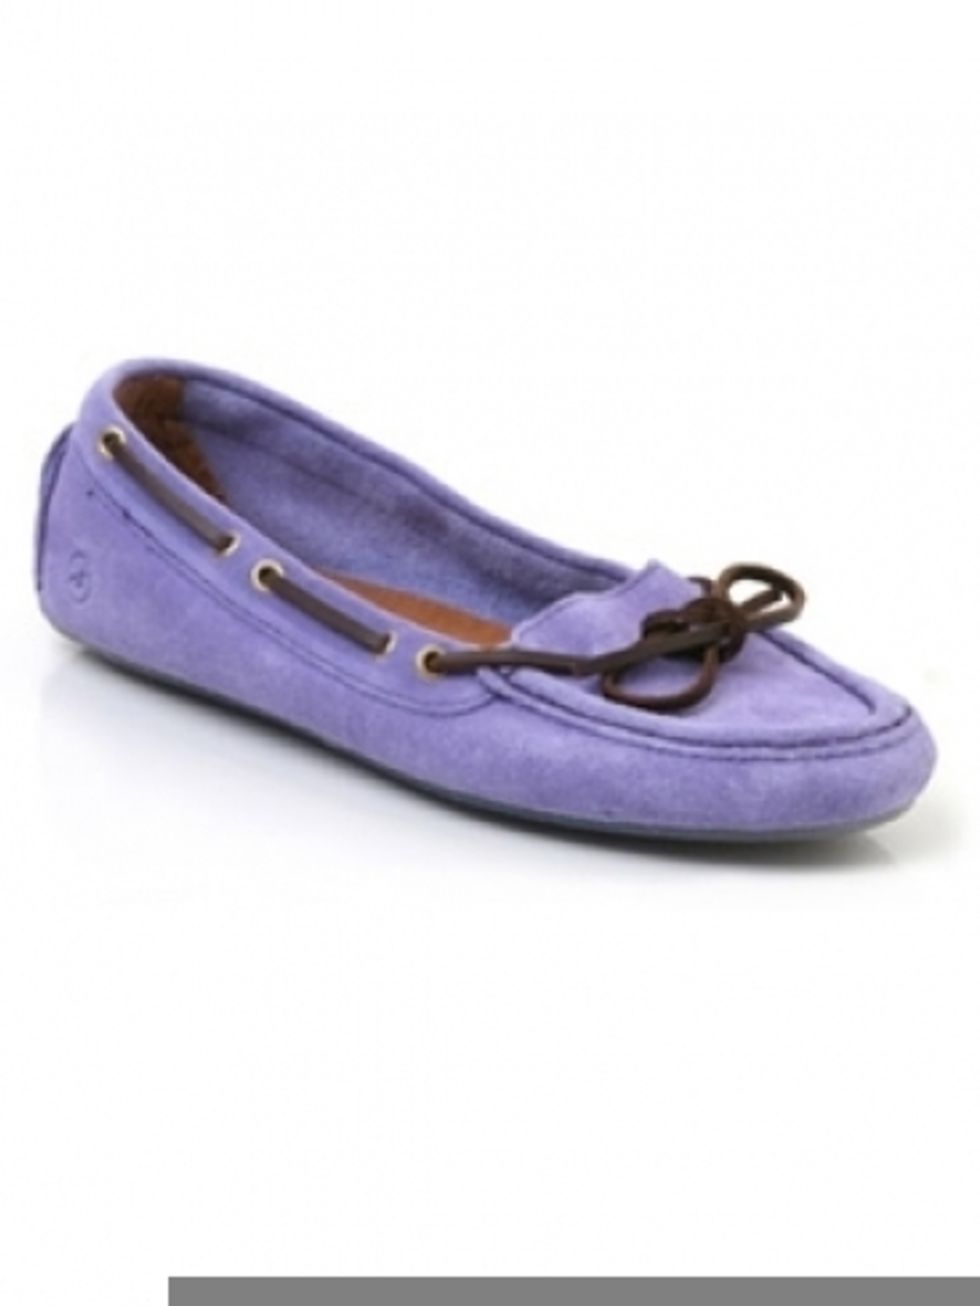 Product, Shoe, Purple, Violet, Lavender, Fashion, Ballet flat, Tan, Electric blue, Dress shoe, 